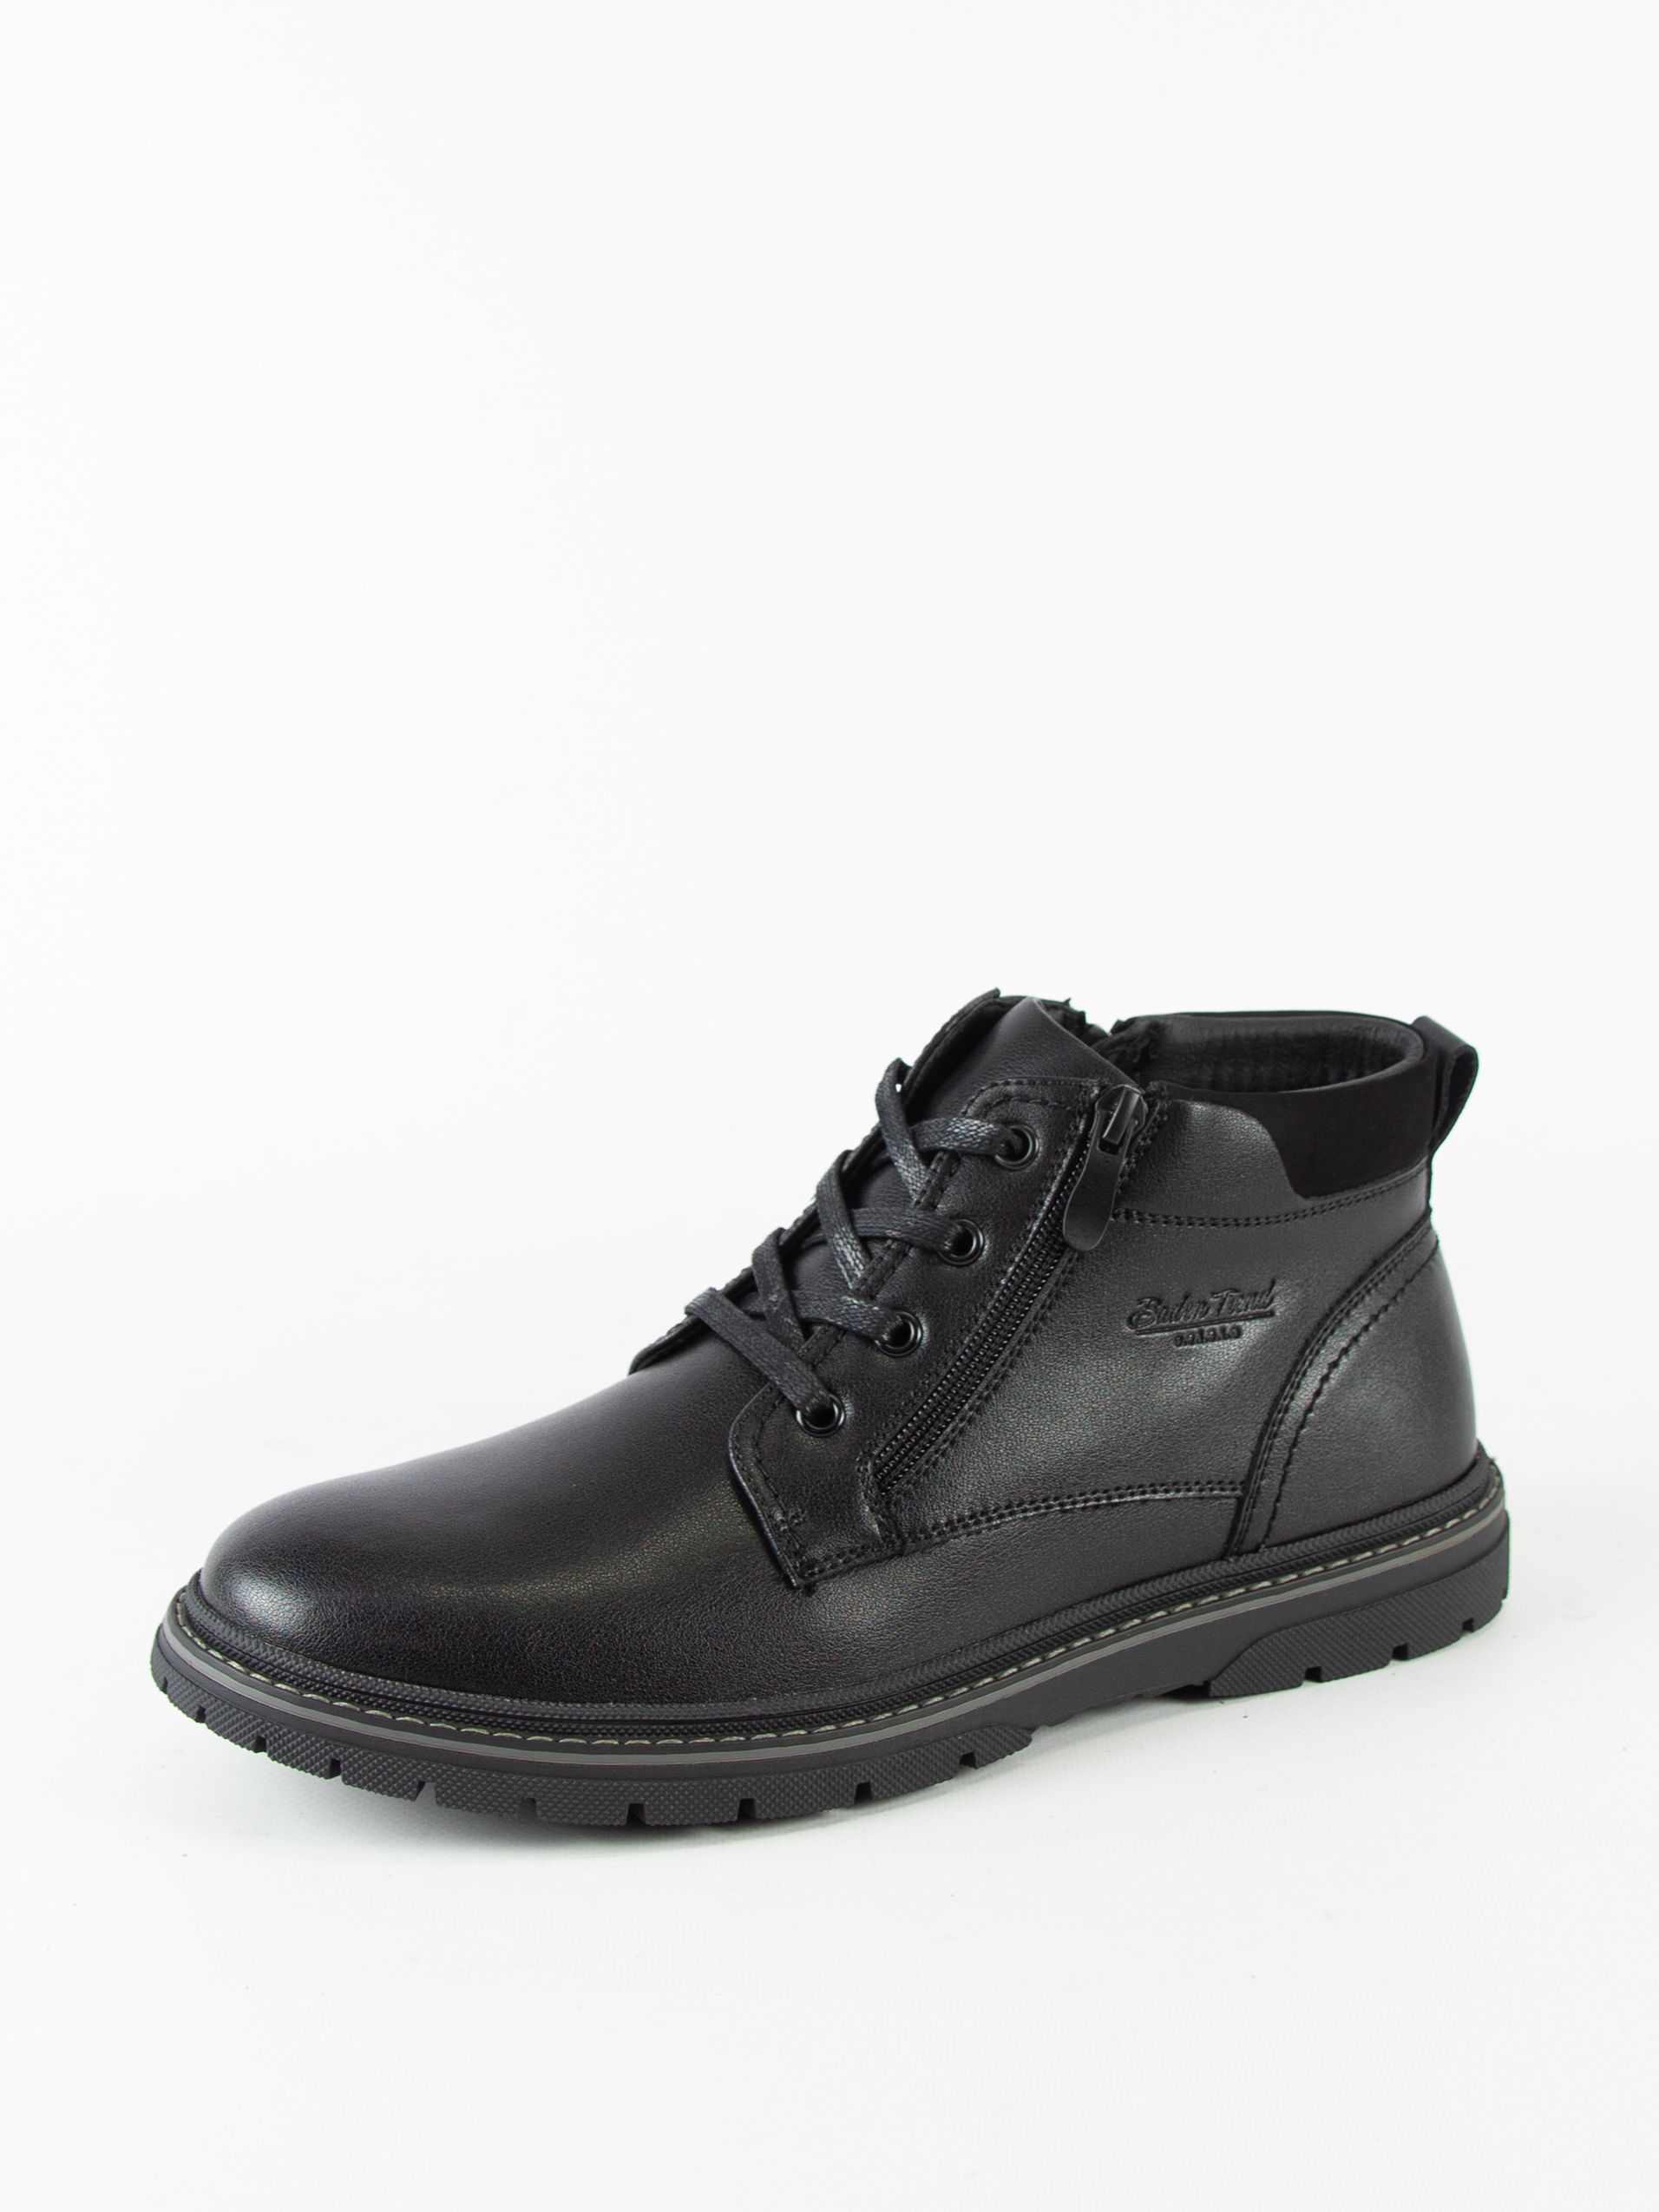 Ботинки мужские Baden LZ139-020 черные 42 RU